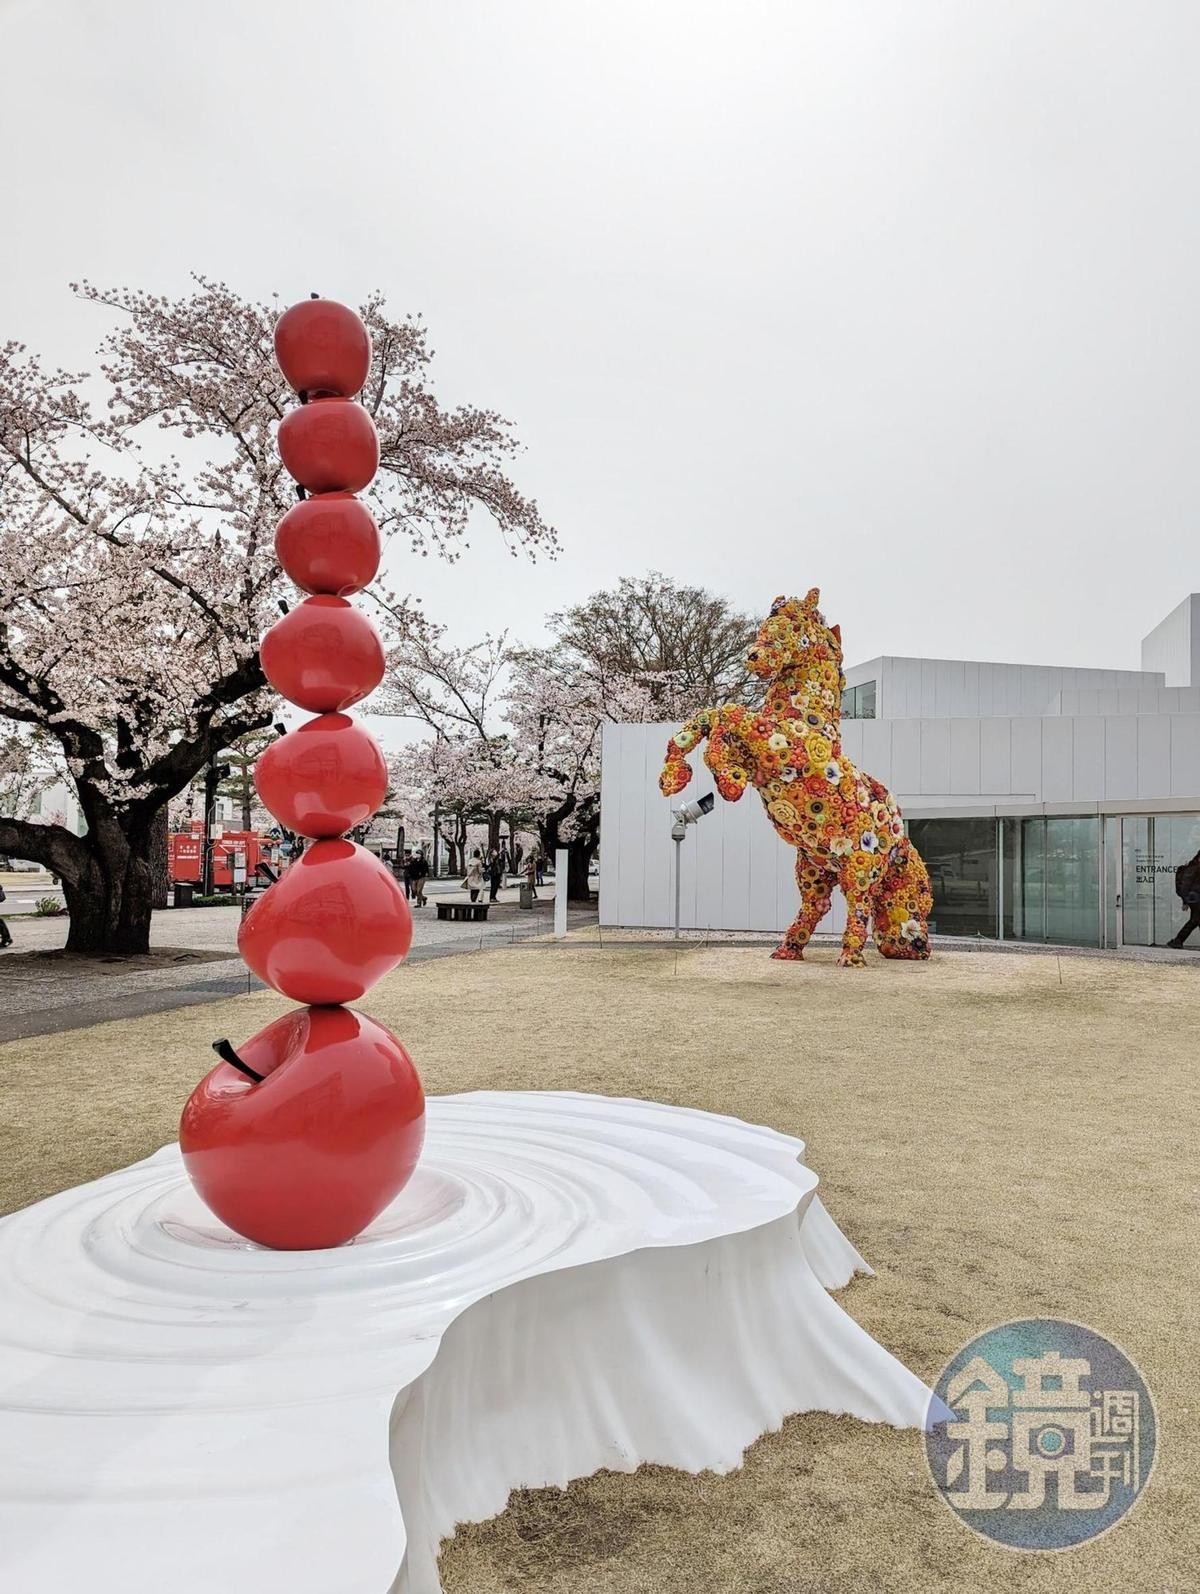 後方為韓國藝術家崔正化的作品《Flower Horse》與美術館前方的蘋果藝術品相映。